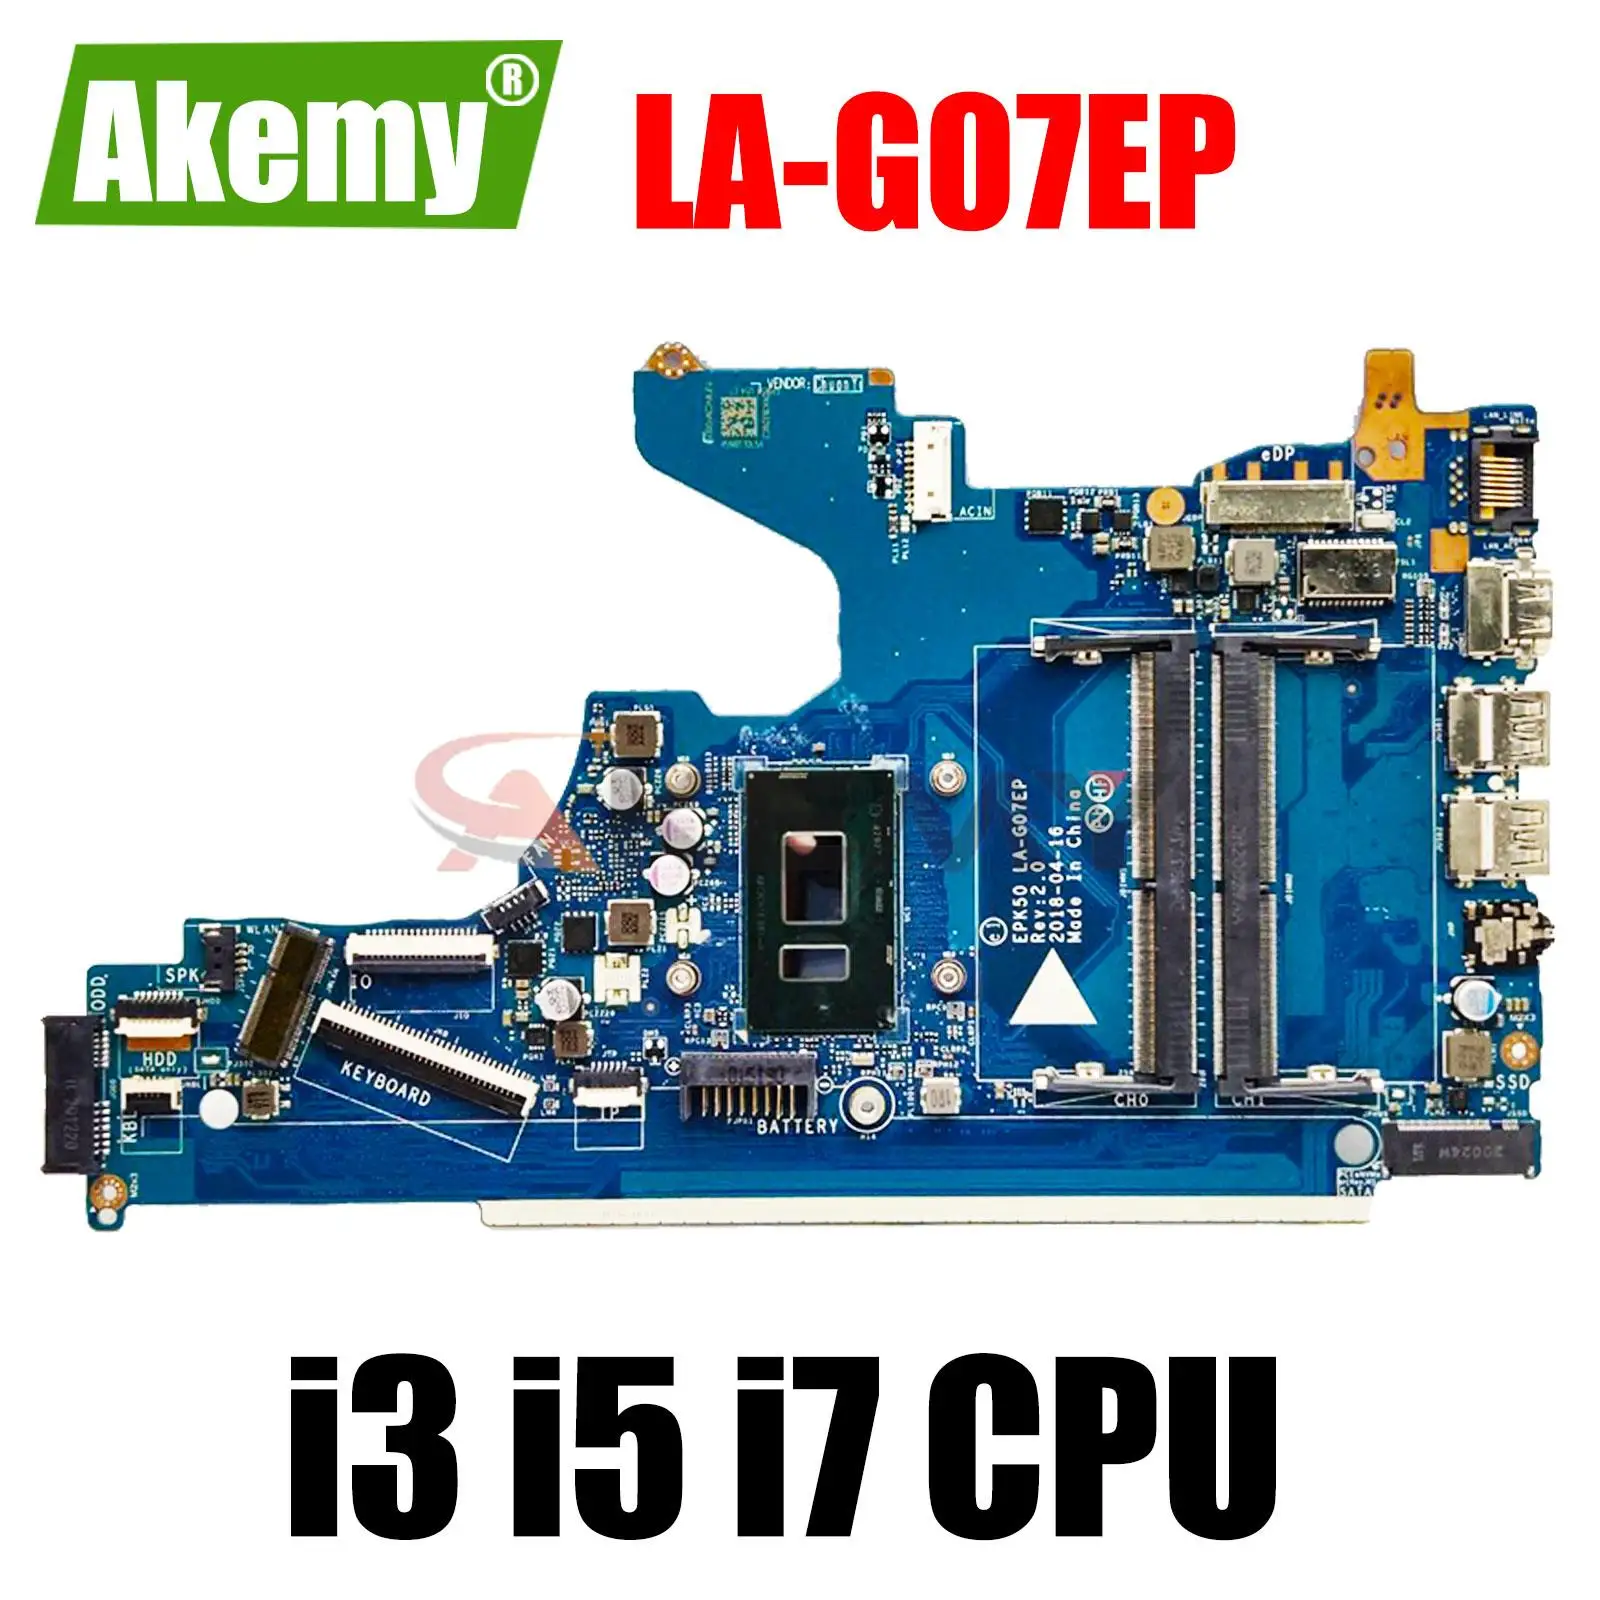 

For HP Pavilion 15-DA 250 G7 LA-G07DP Laptop Motherboard With i3 i5 i7 CPU EPK50 LA-G07EP L20373-601 L20373-601